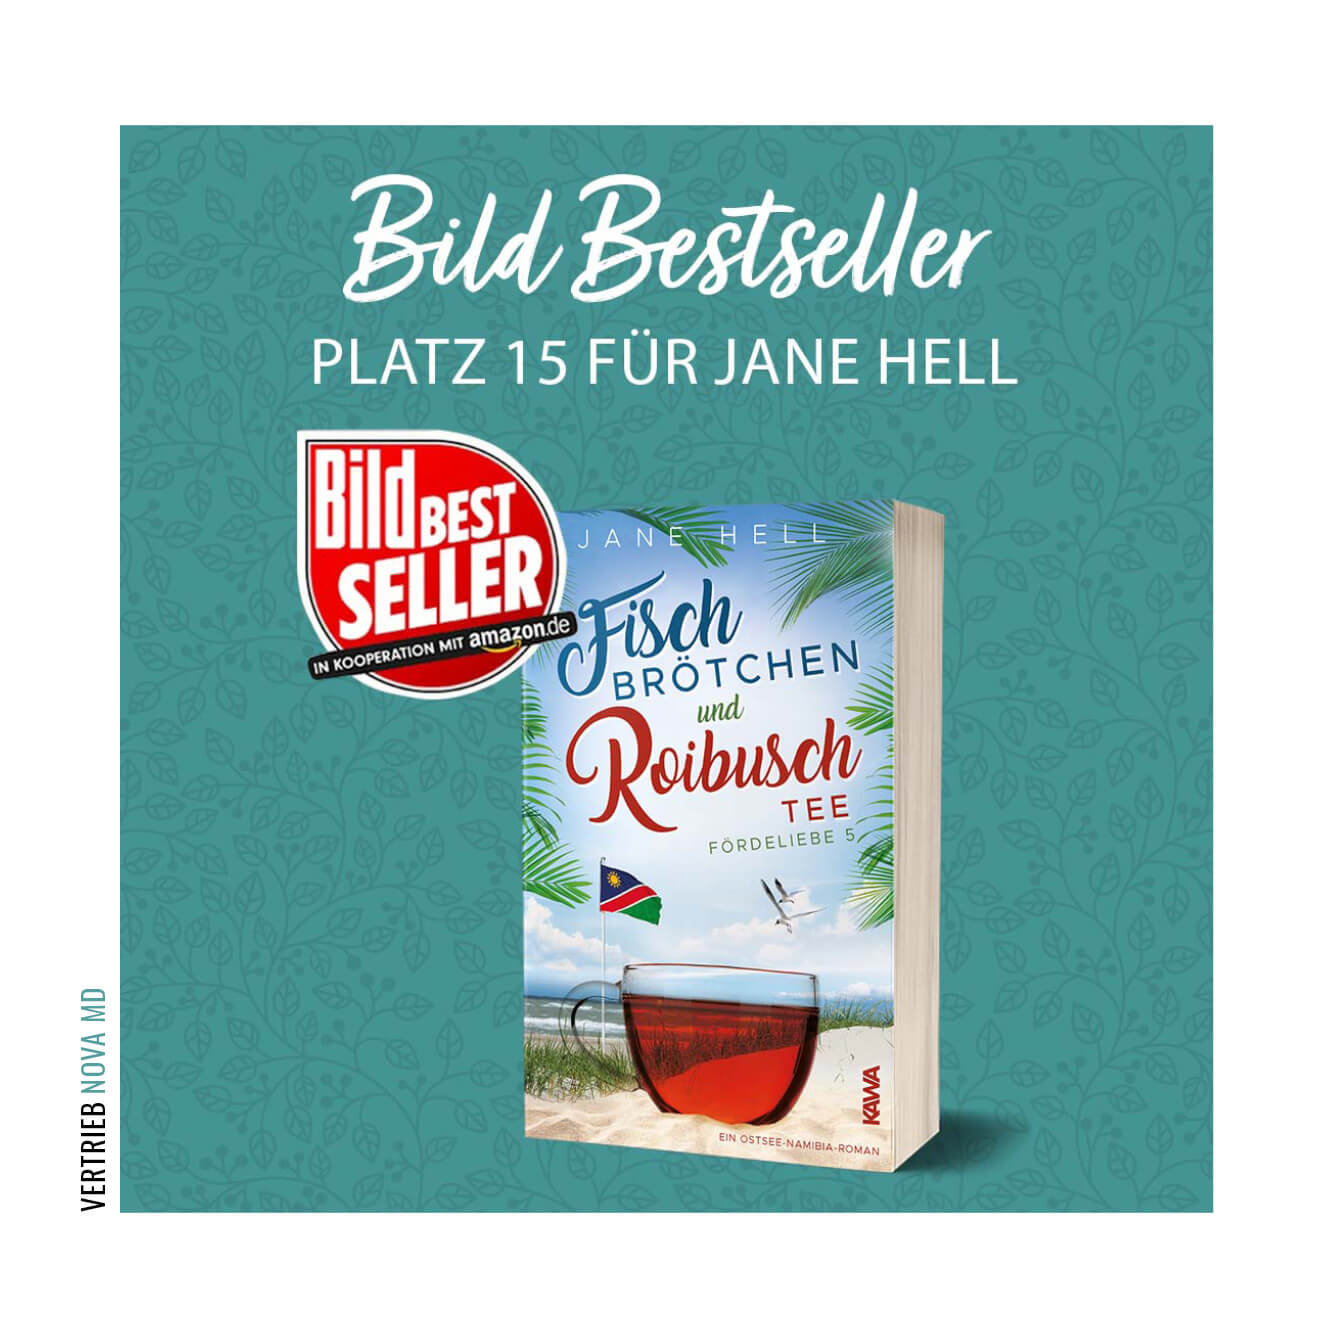 Buch Cover Fischbrötchen und Roibuschtee mit Bild Bestseller Button